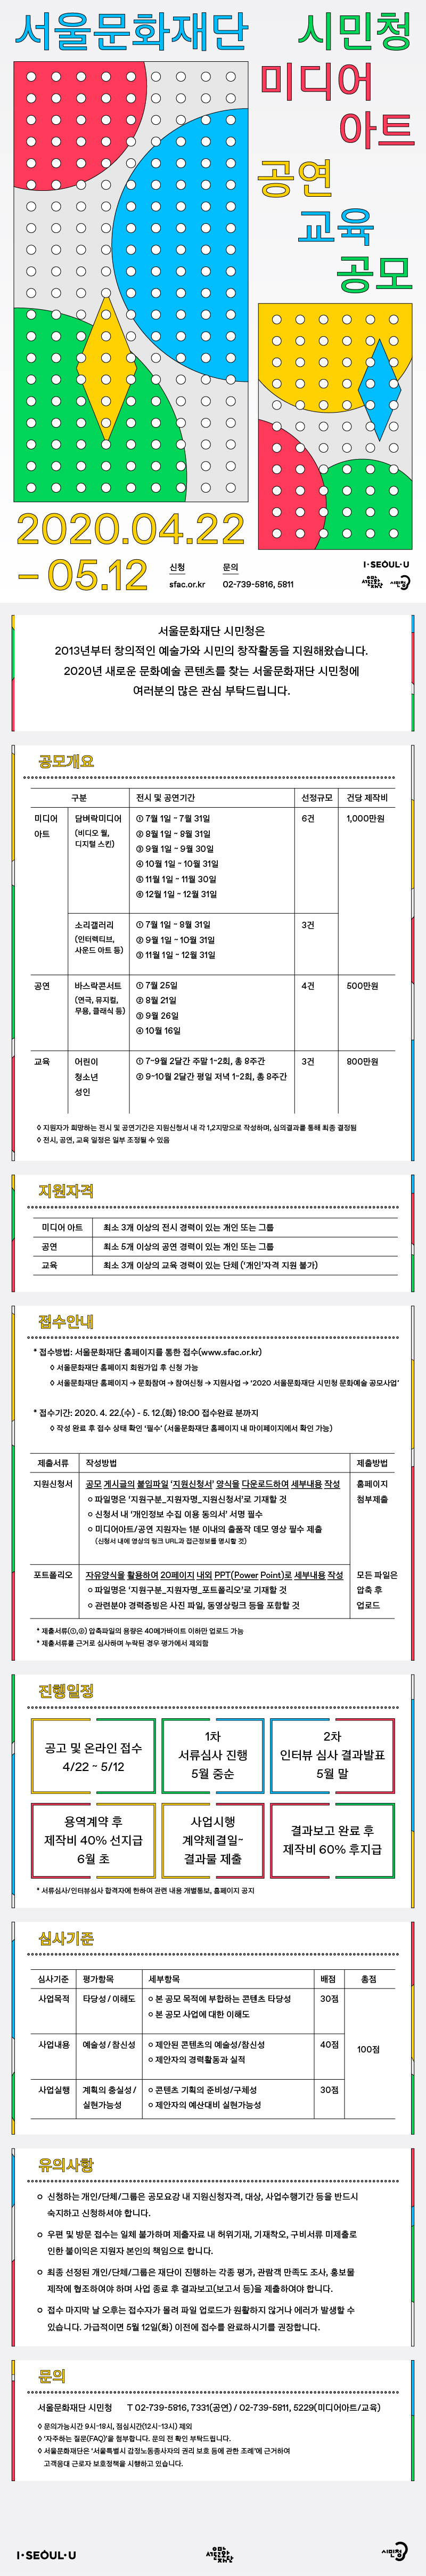 2020 서울문화재단 시민청 문화예술 공모